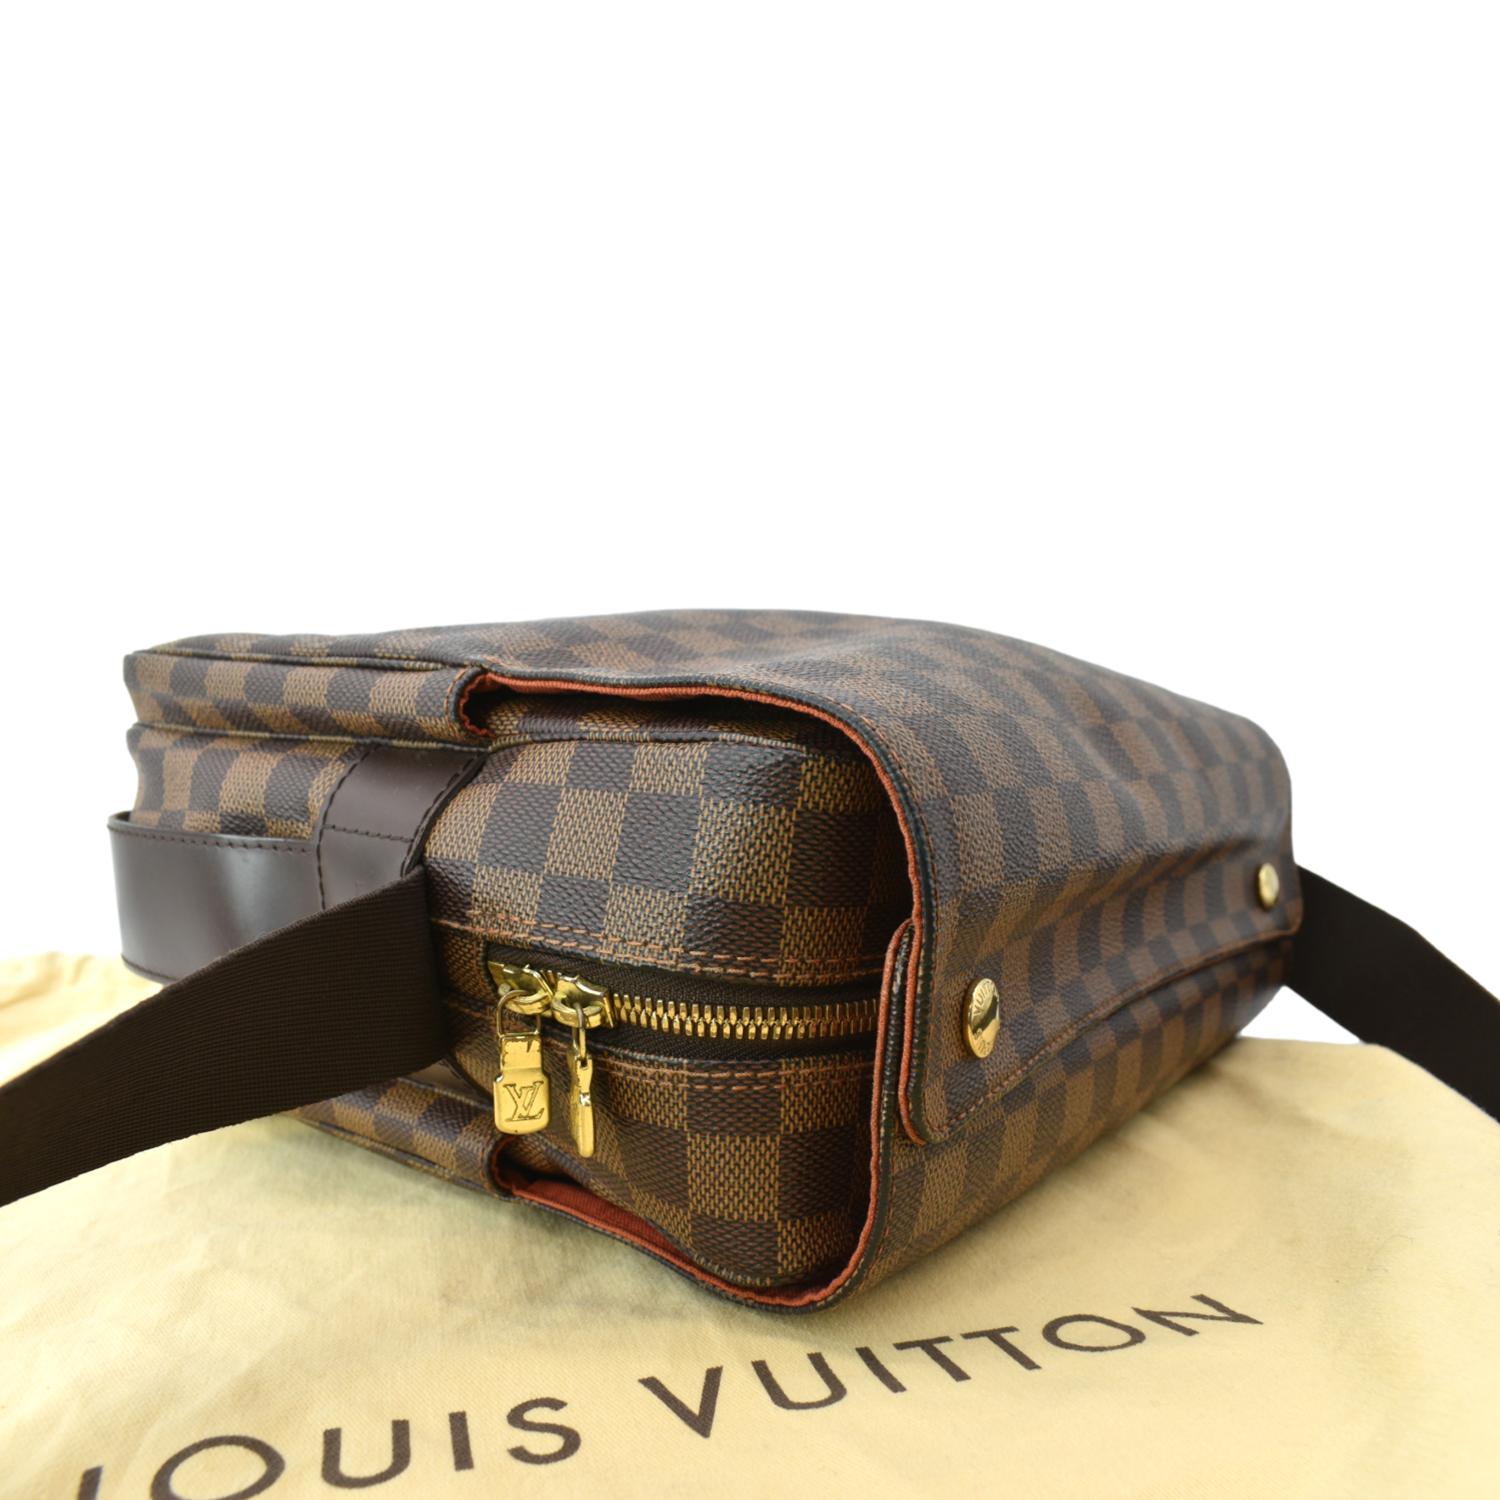 Bolsa de hombro Louis Vuitton Naviglio 389217